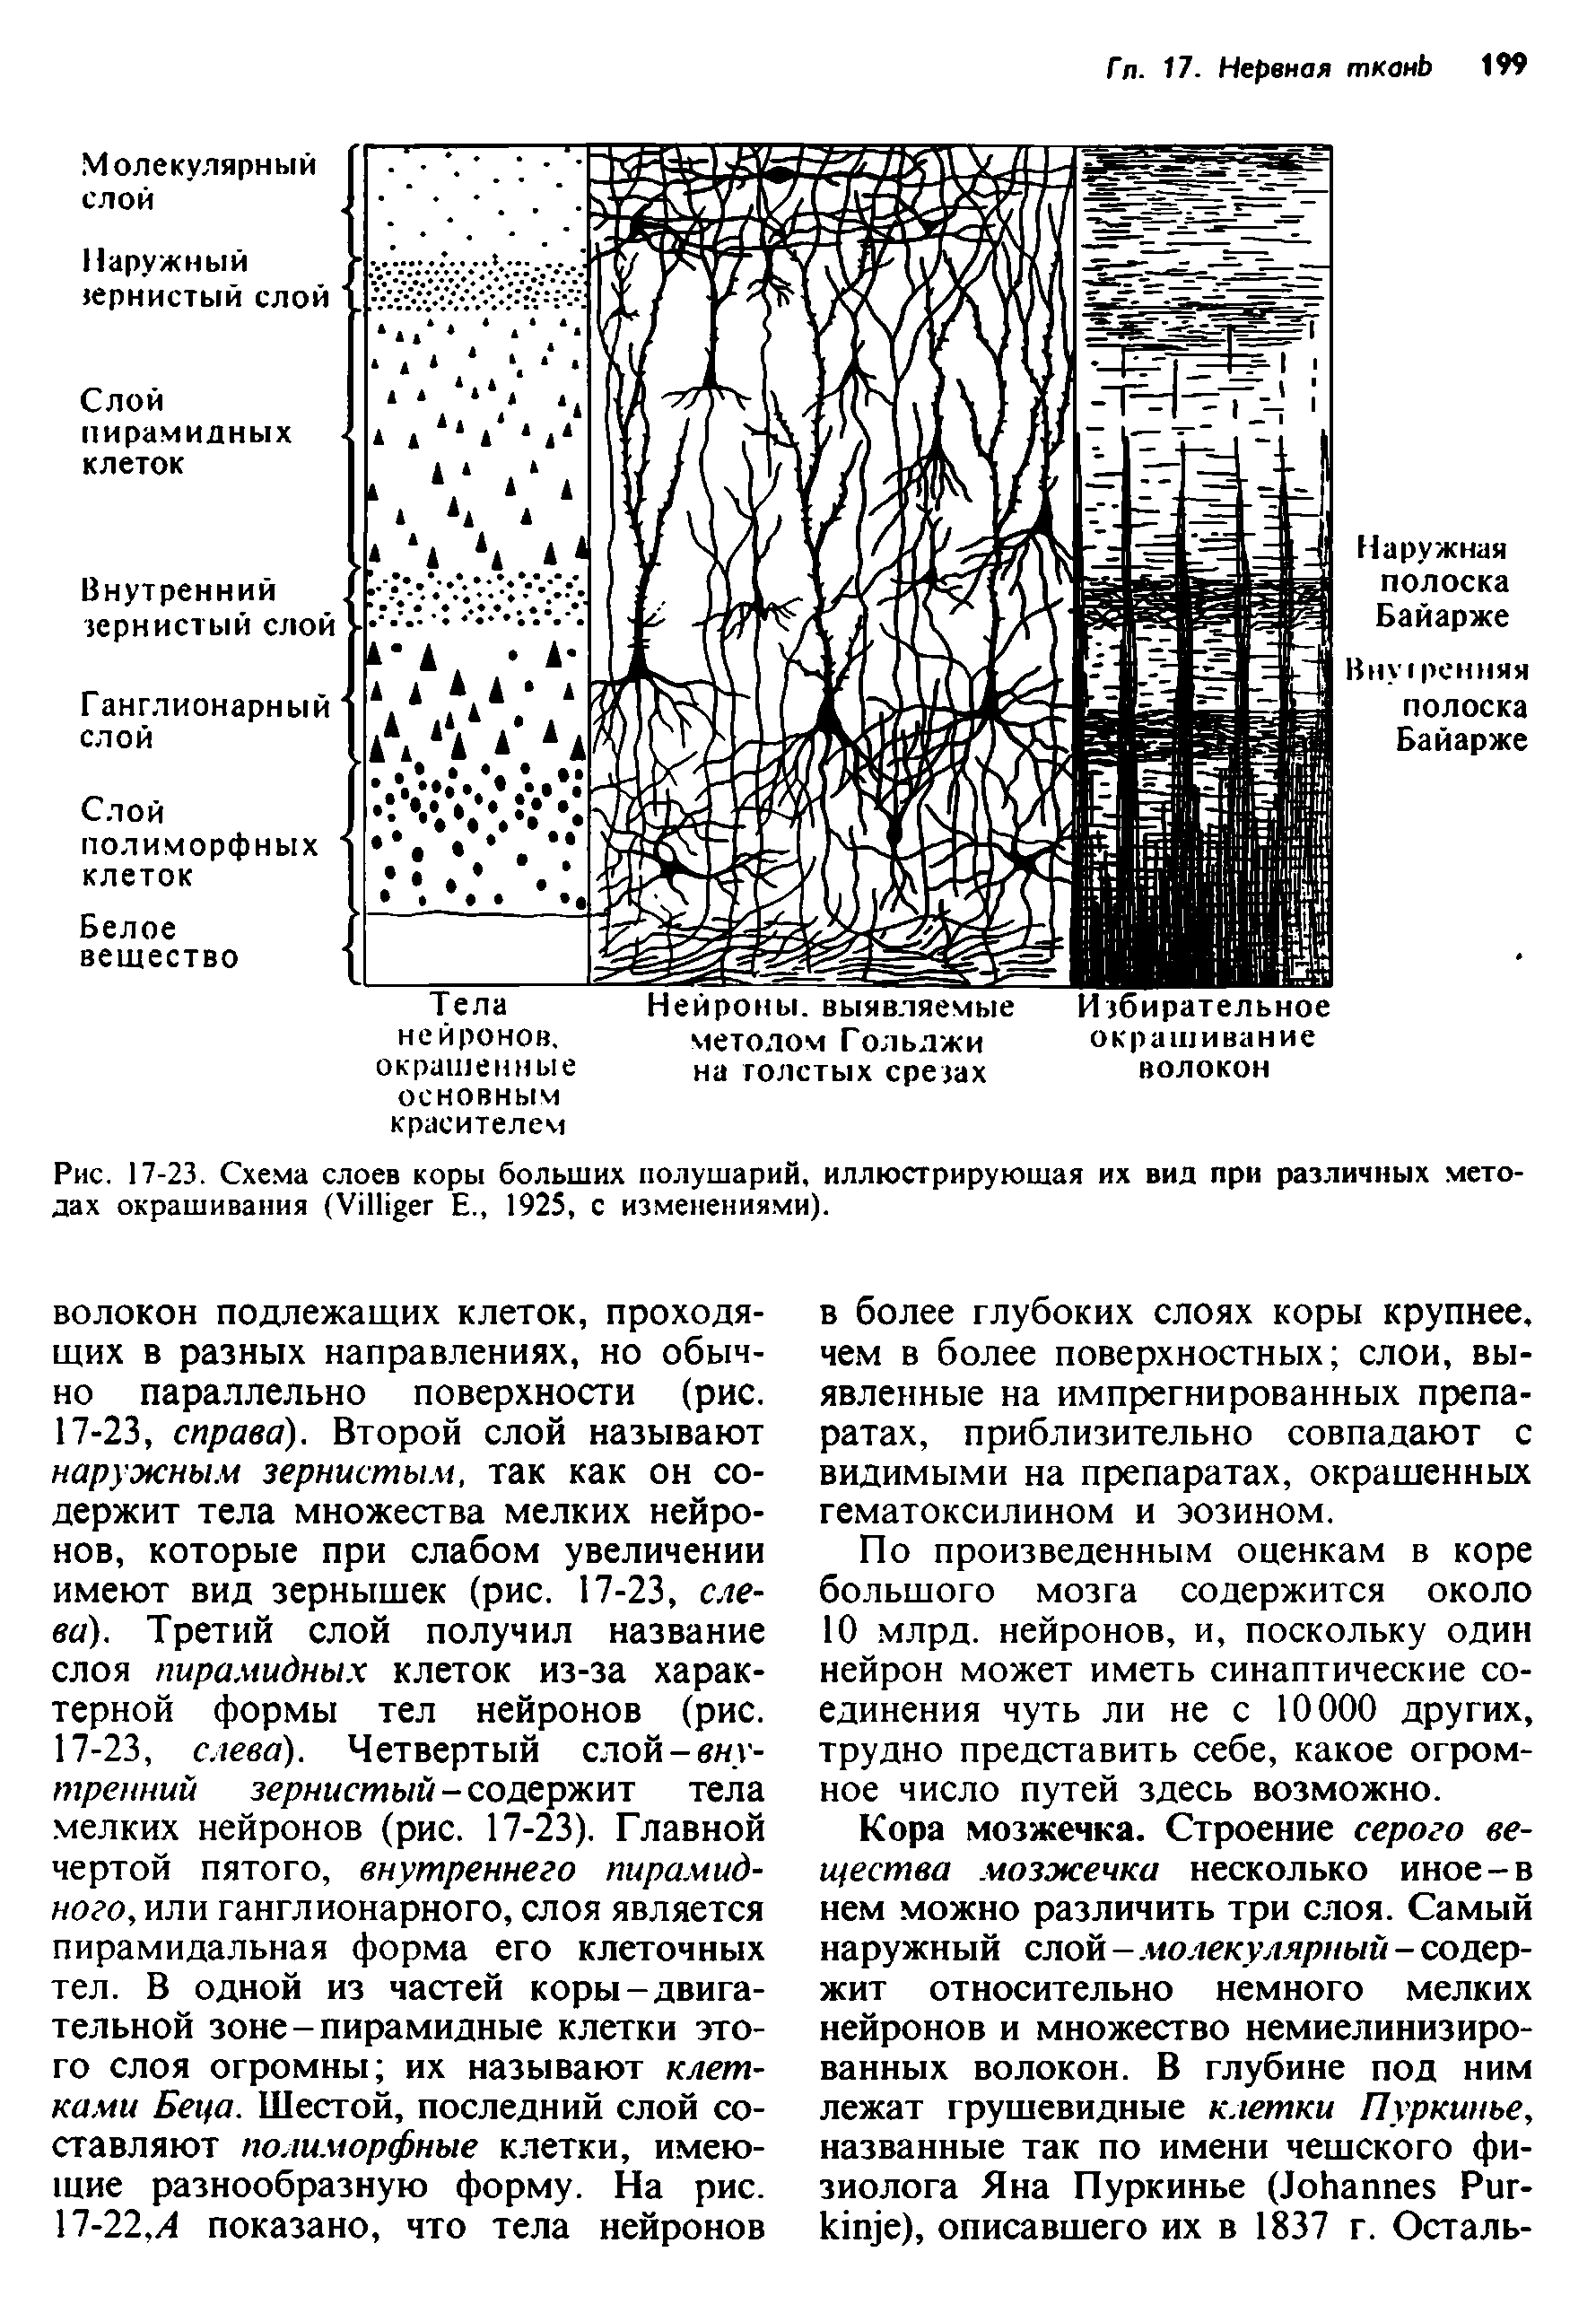 Рис. 17-23. Схема слоев коры больших полушарий, иллюстрирующая их вид при различных методах окрашивания (УП ег Е., 1925, с изменениями).